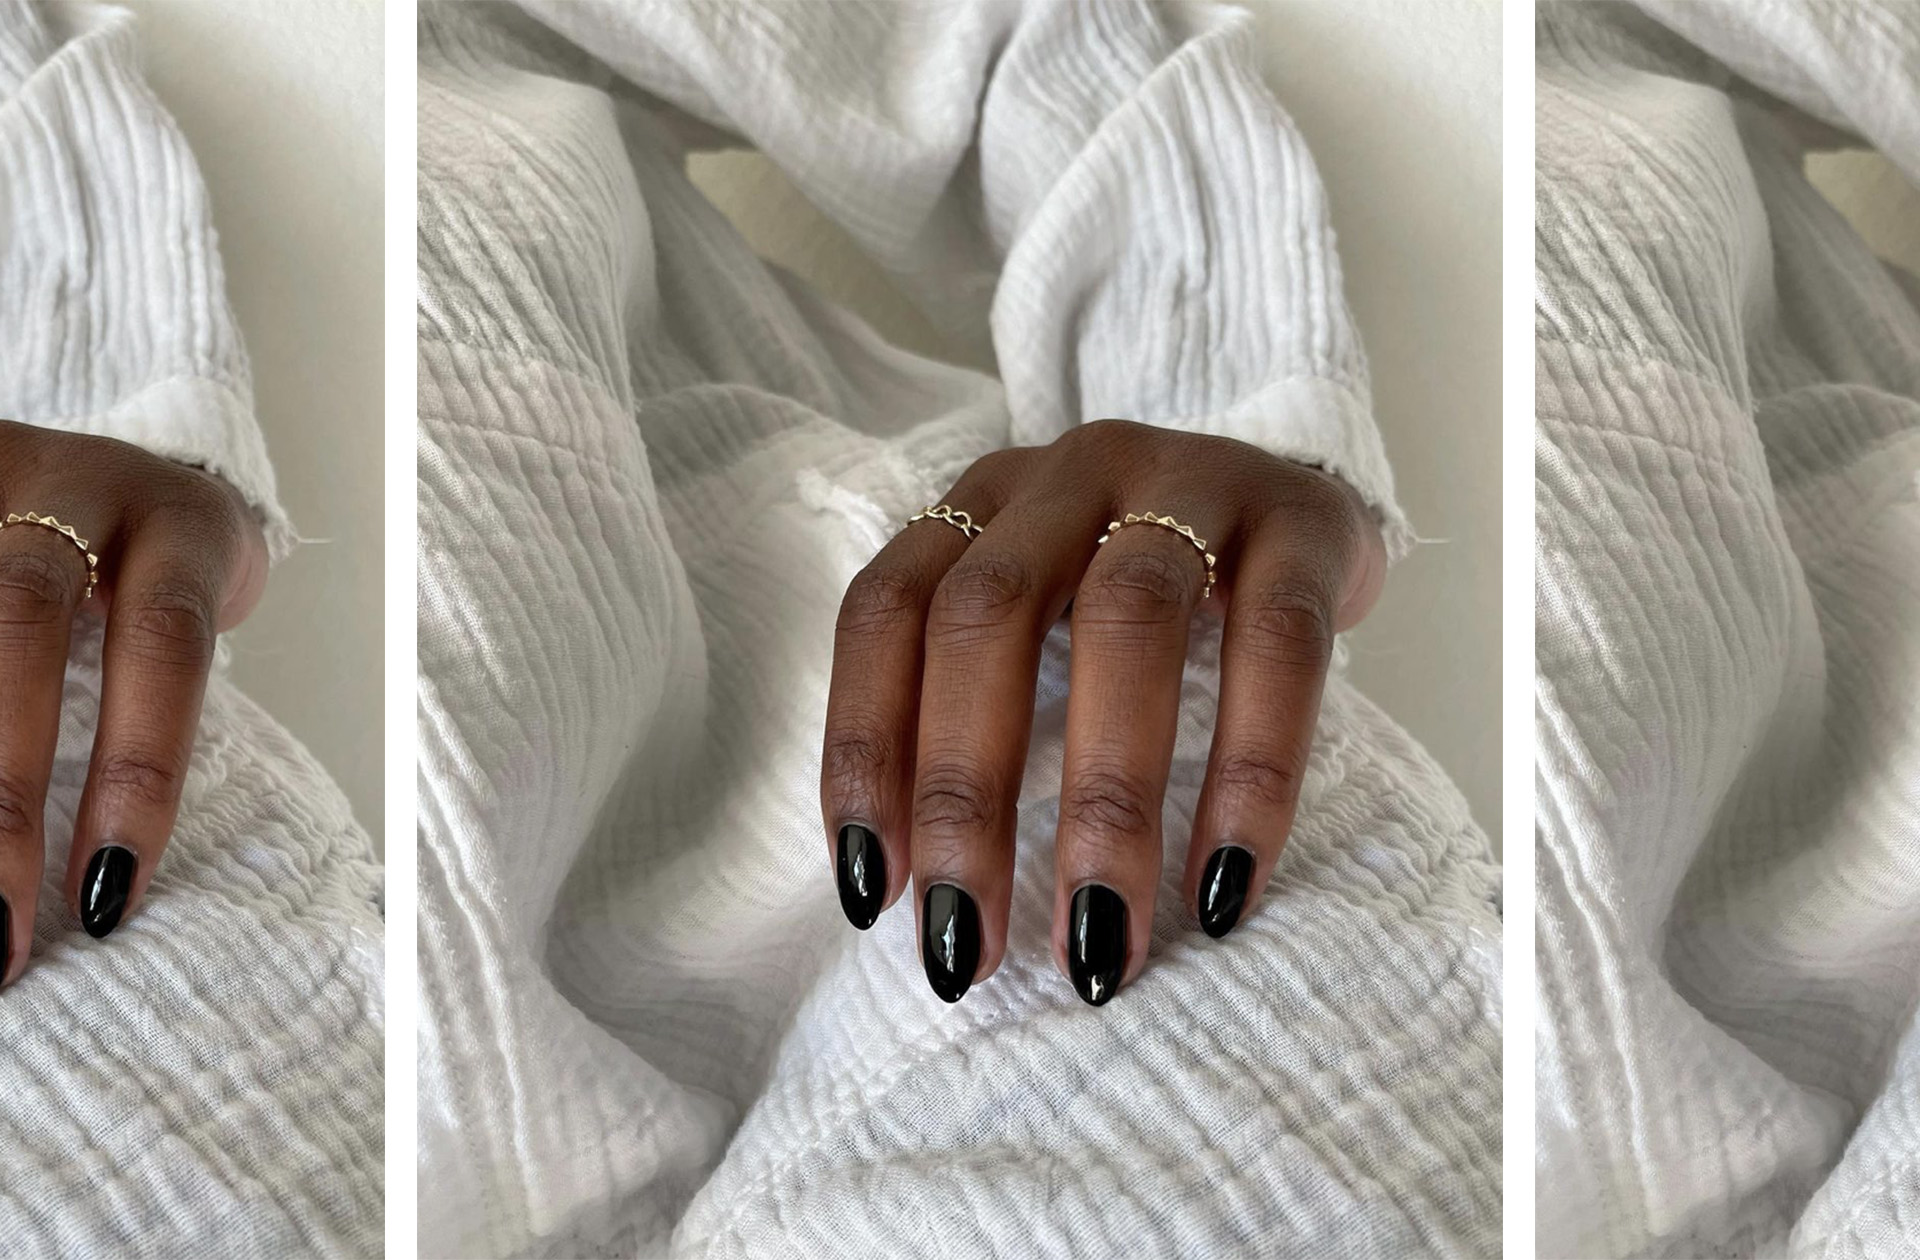 Leather nails : quelle est cette tendance qui habille les ongles de cuir ? 